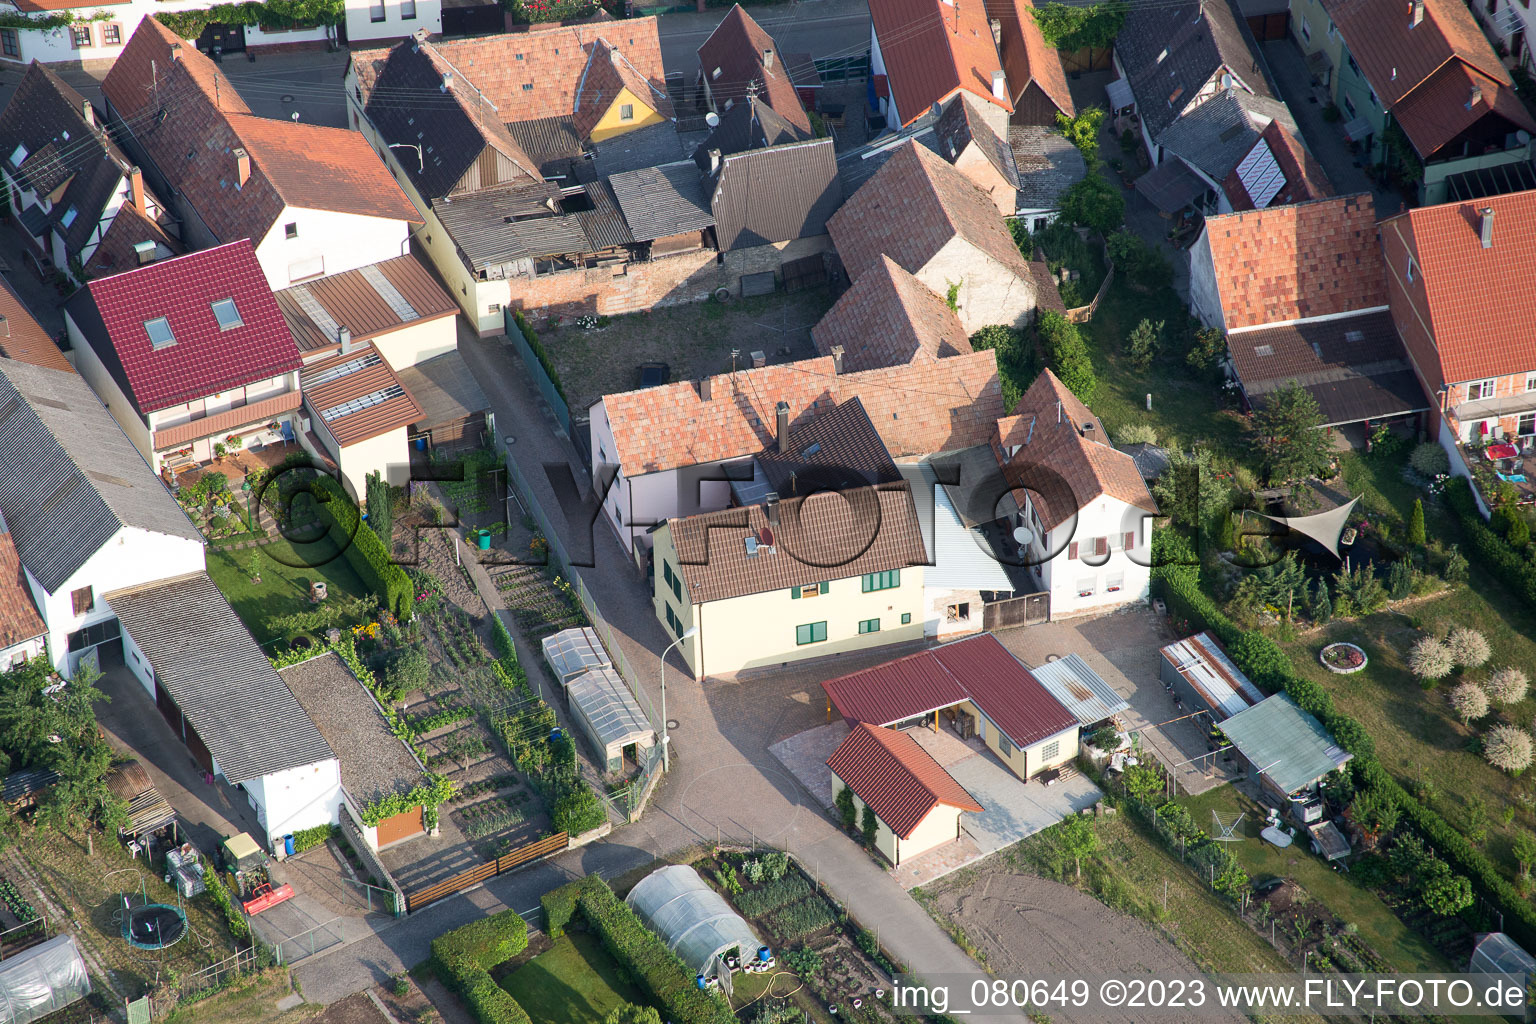 Vue oblique de Zeiskam dans le département Rhénanie-Palatinat, Allemagne